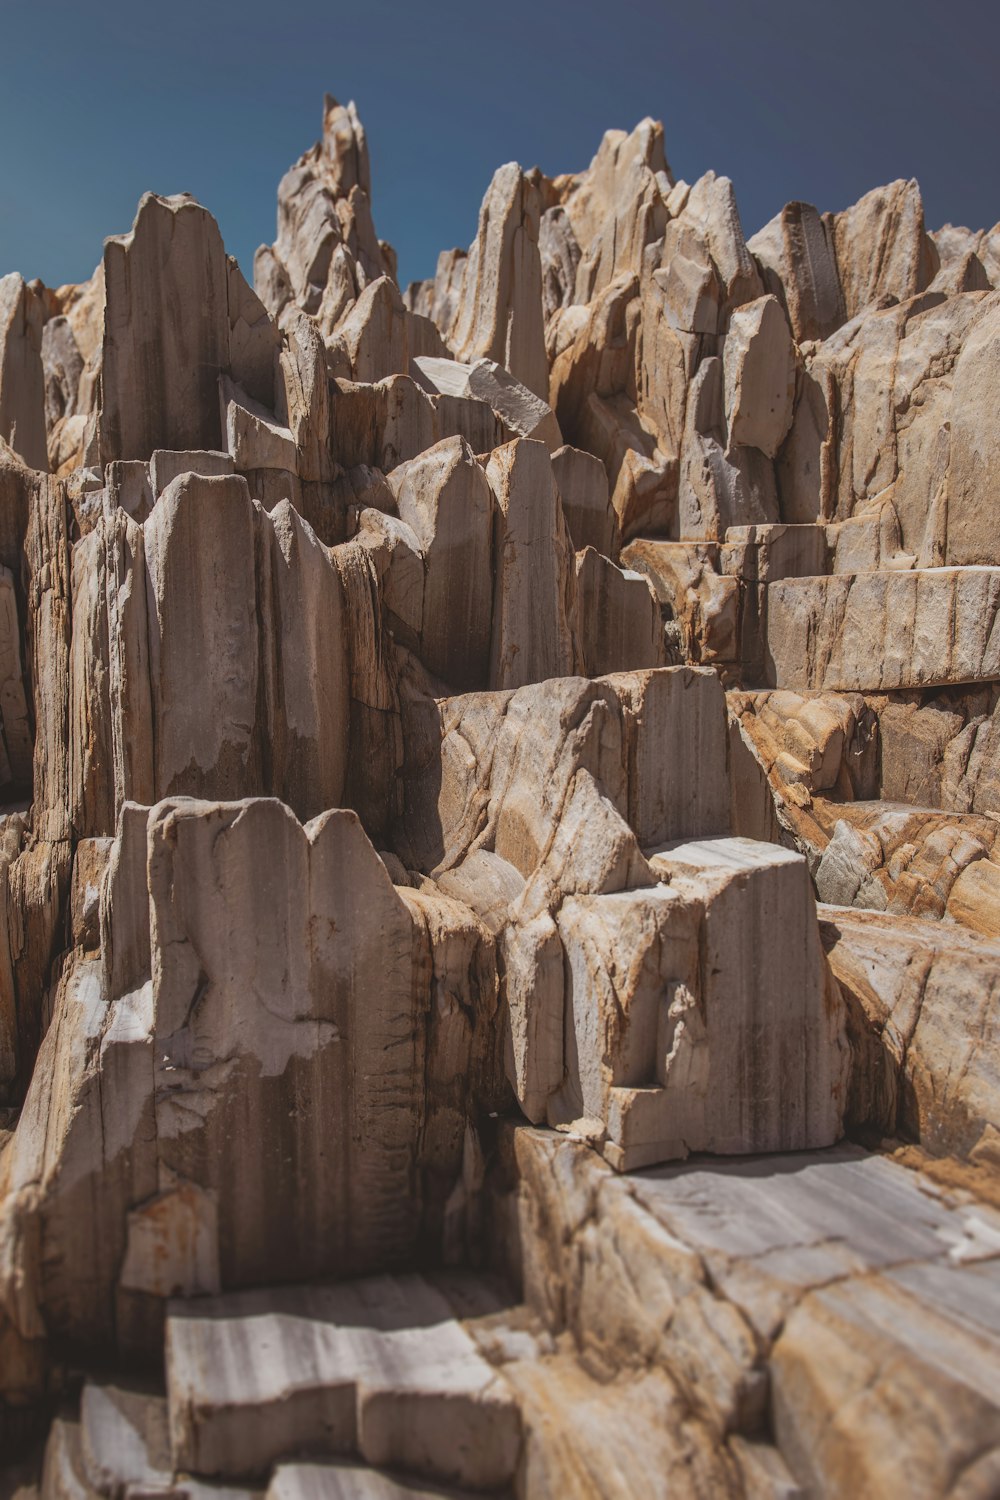 褐色の岩層の風景写真